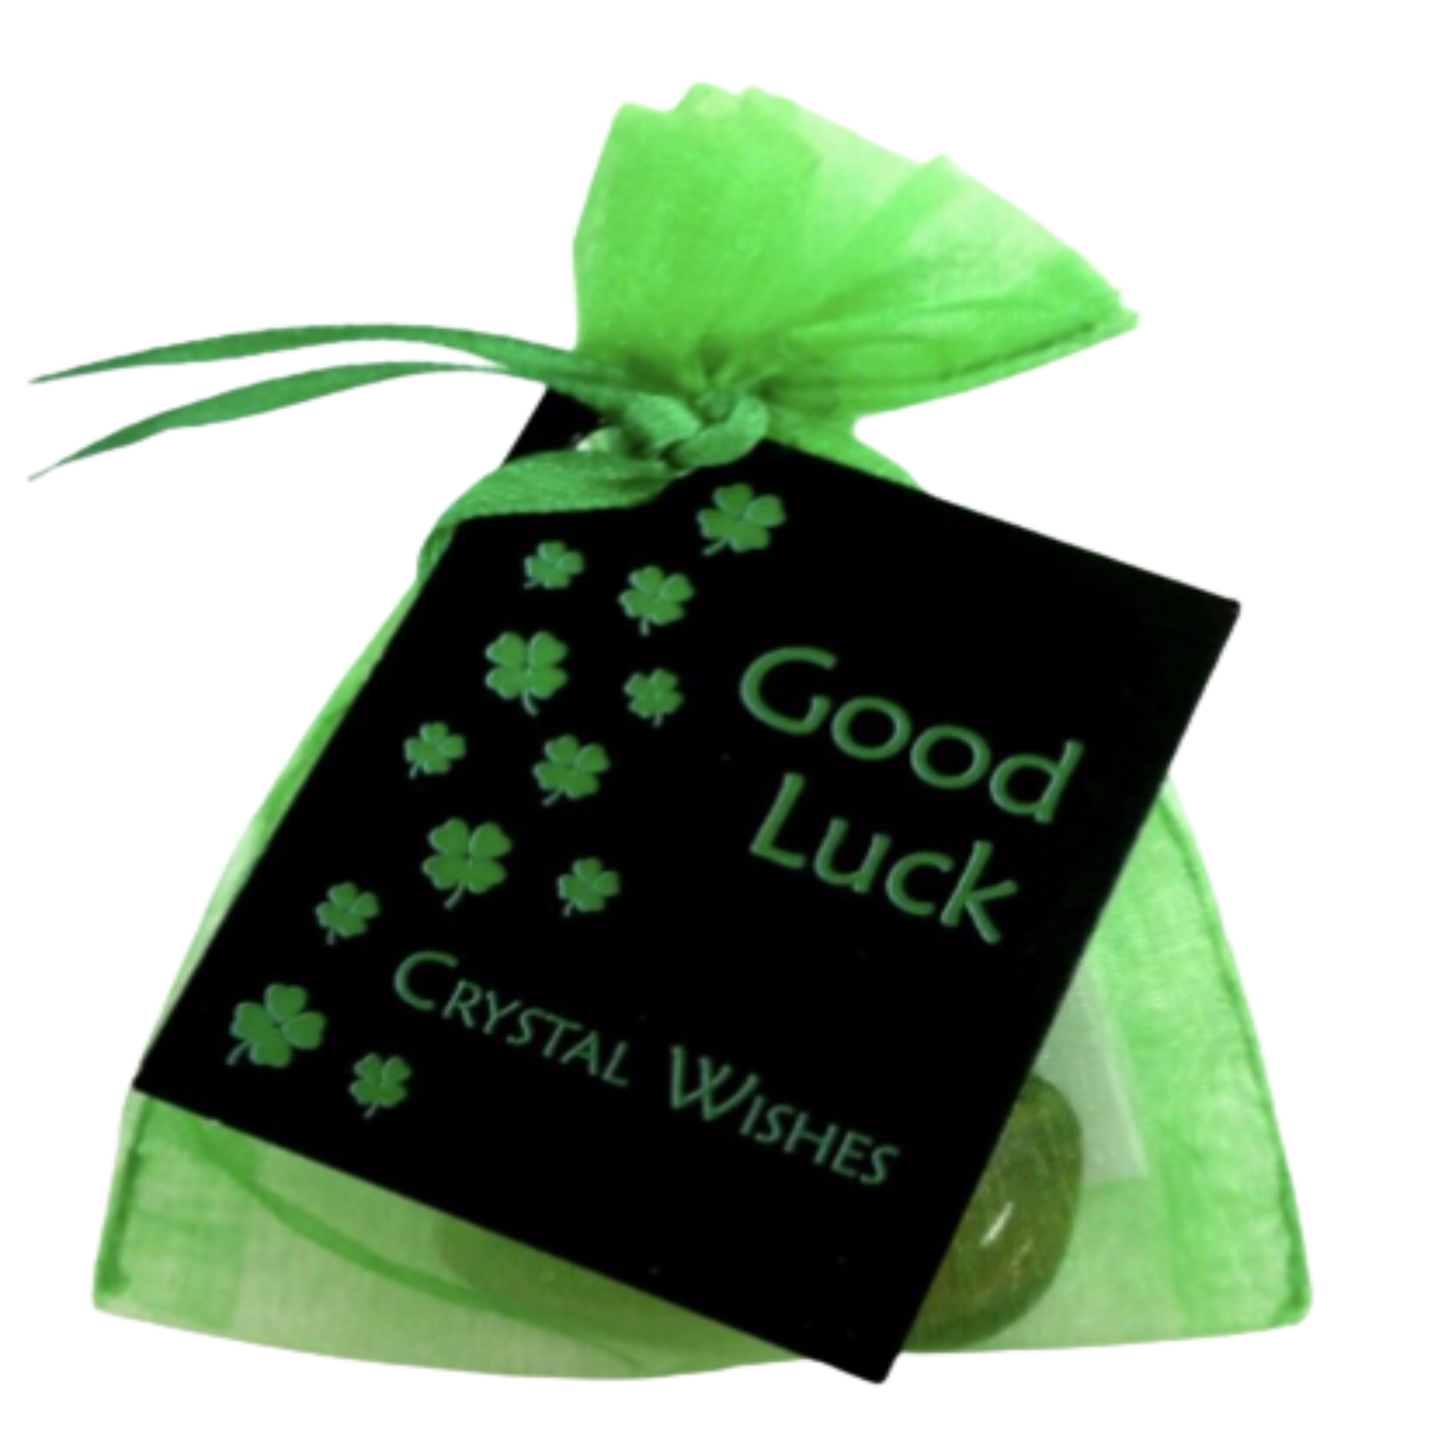 Crystal Wish Bag "Good Luck".